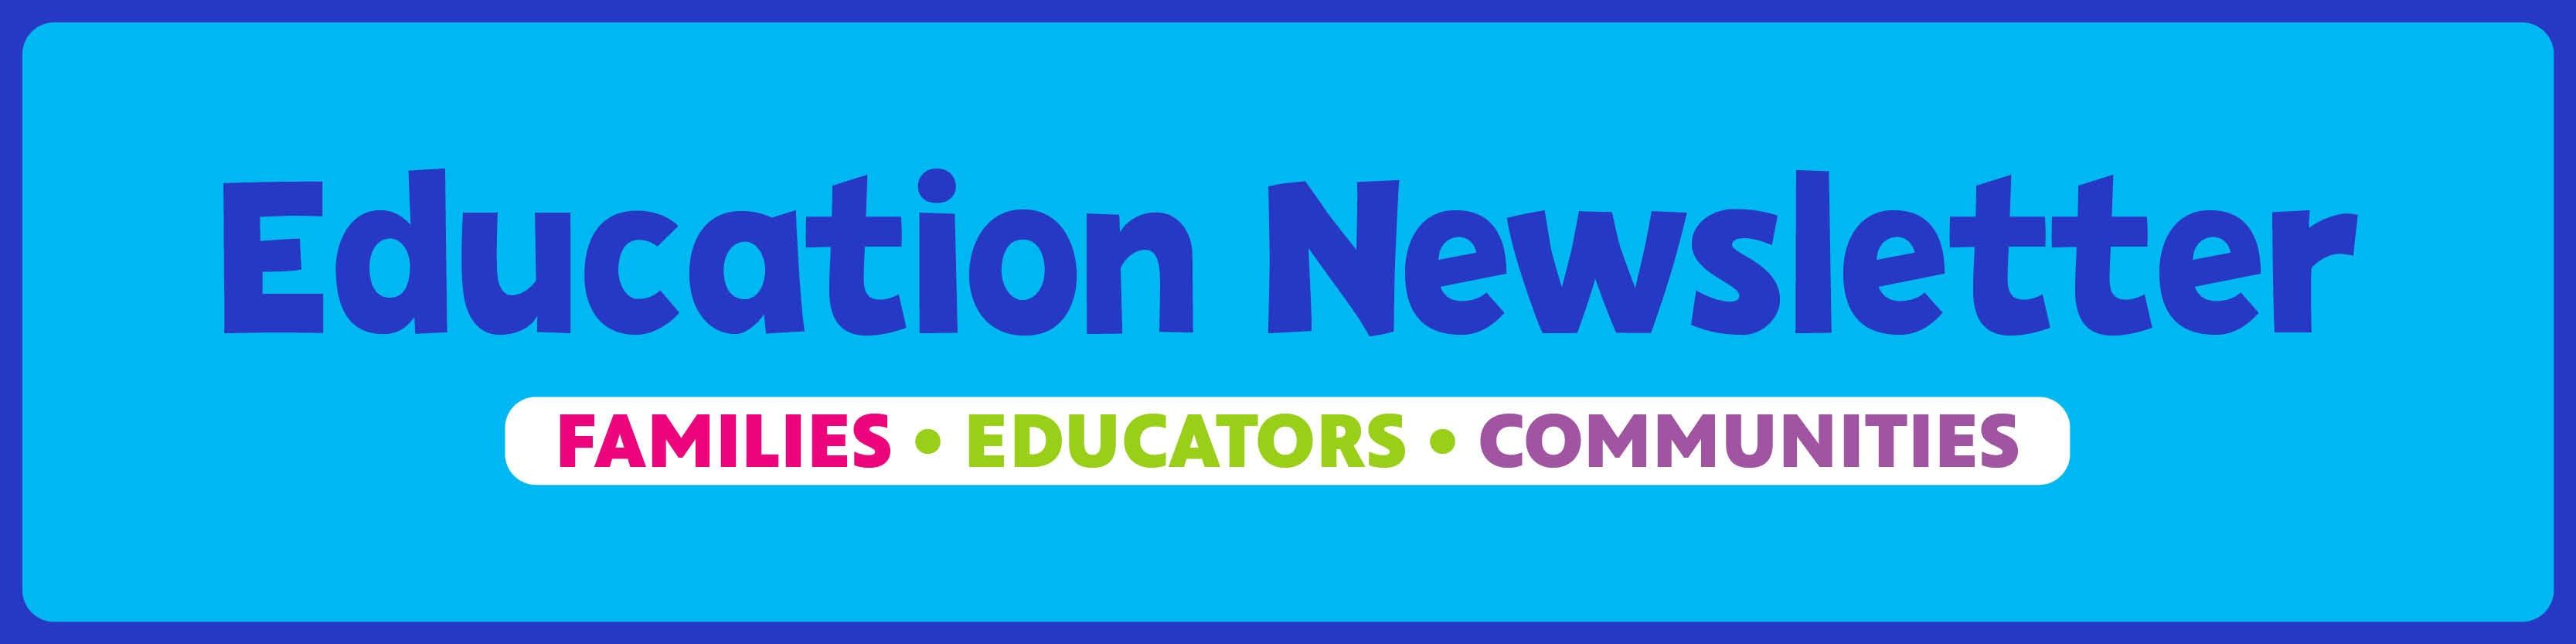 Education Newsletter Header